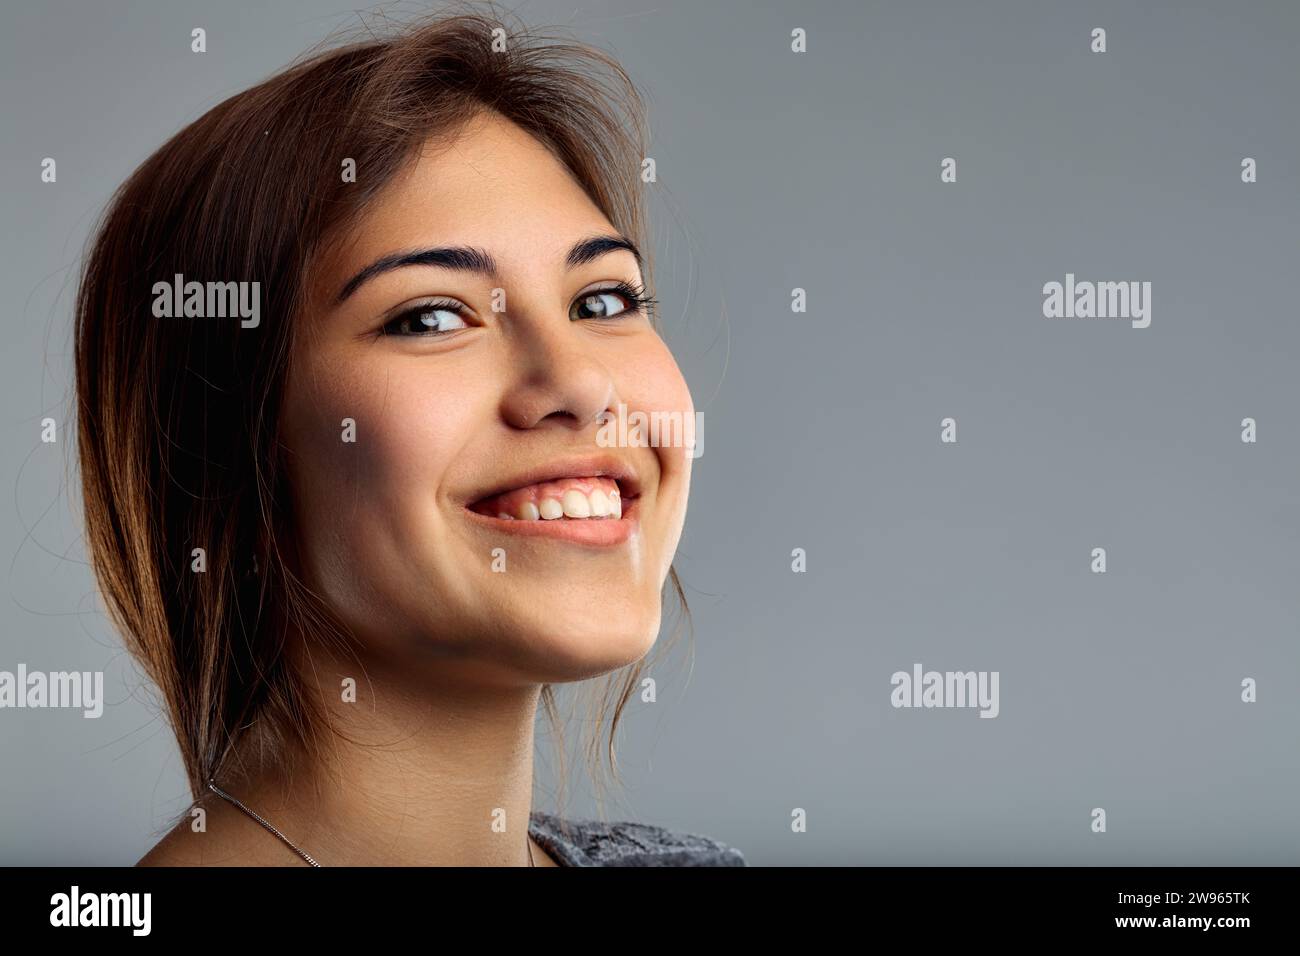 Die fröhliche Aura des Subjekts zeigt sich in ihrem direkten Blick und ihrem leichten Lächeln mit einem ordentlichen Aussehen Stockfoto